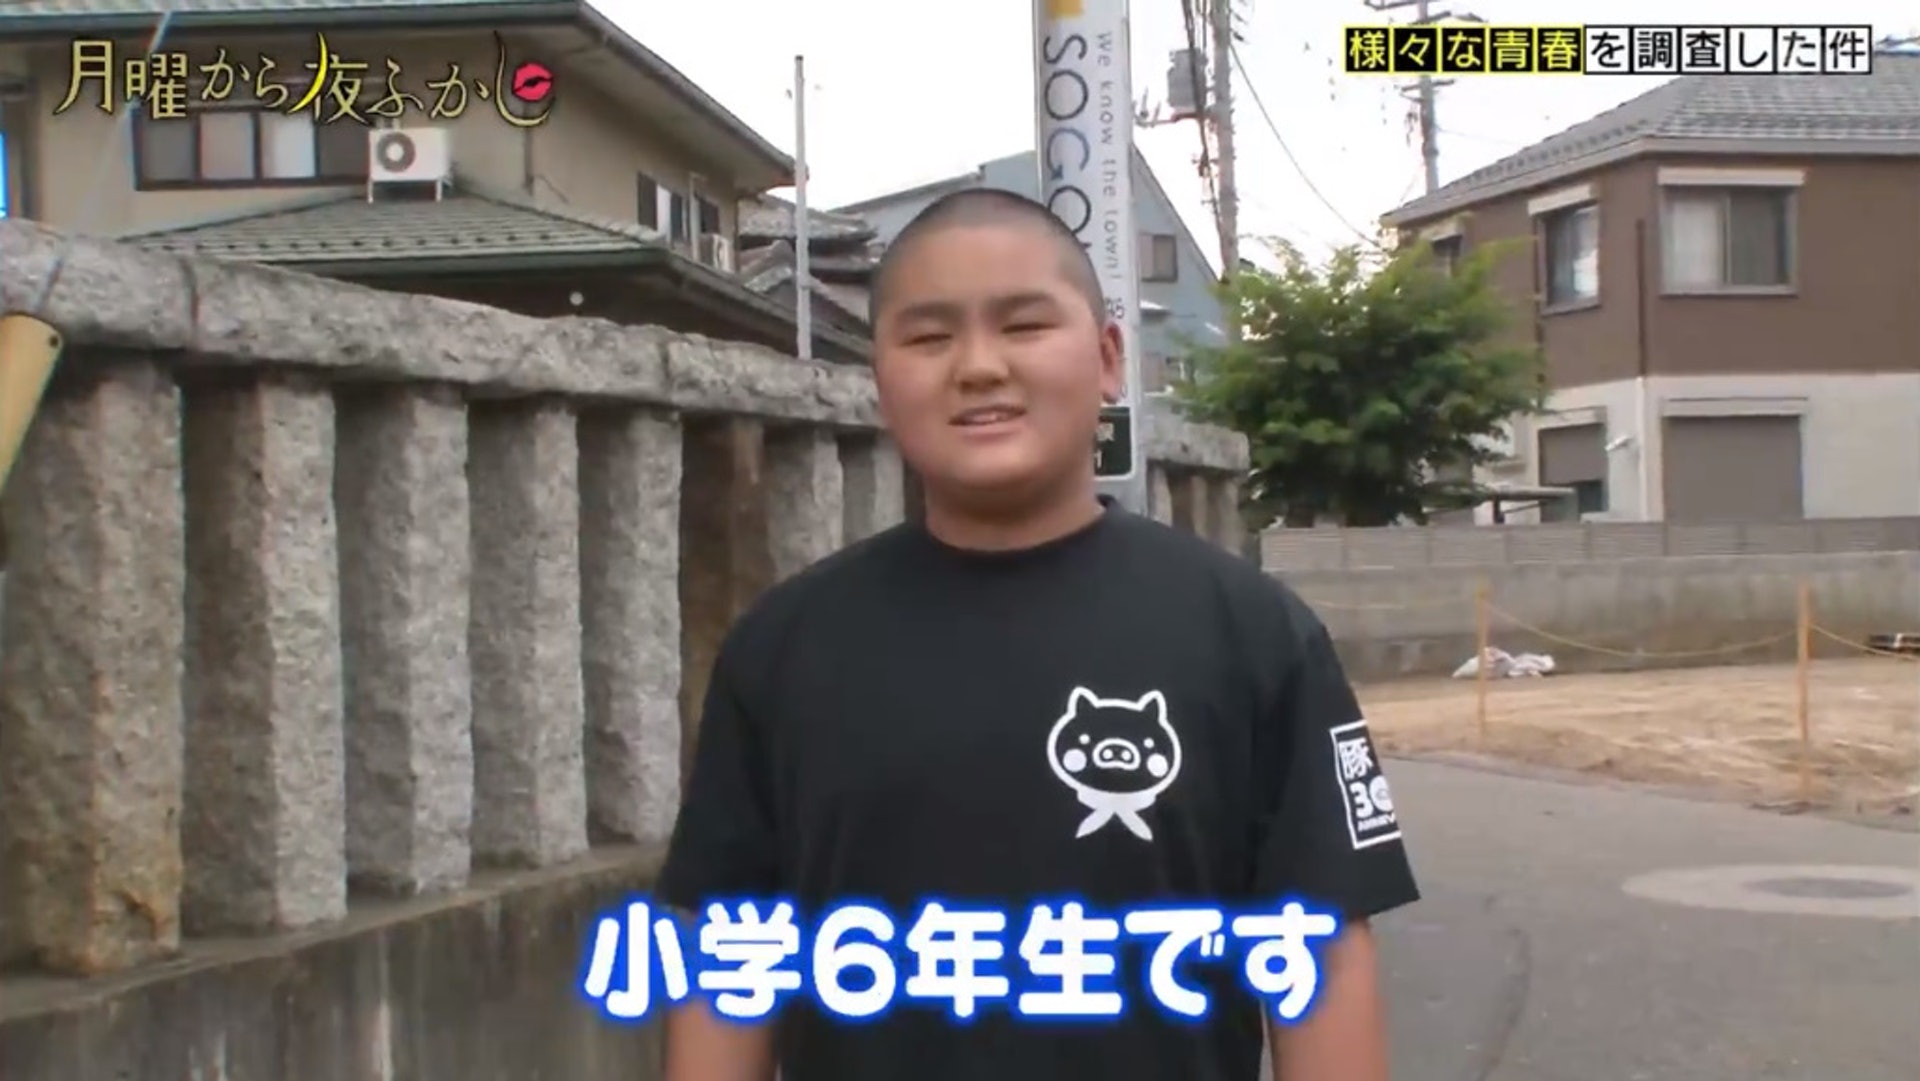 这位又圆又可爱的小胖子叫村越太城,今年12岁,正就读小学六年级.